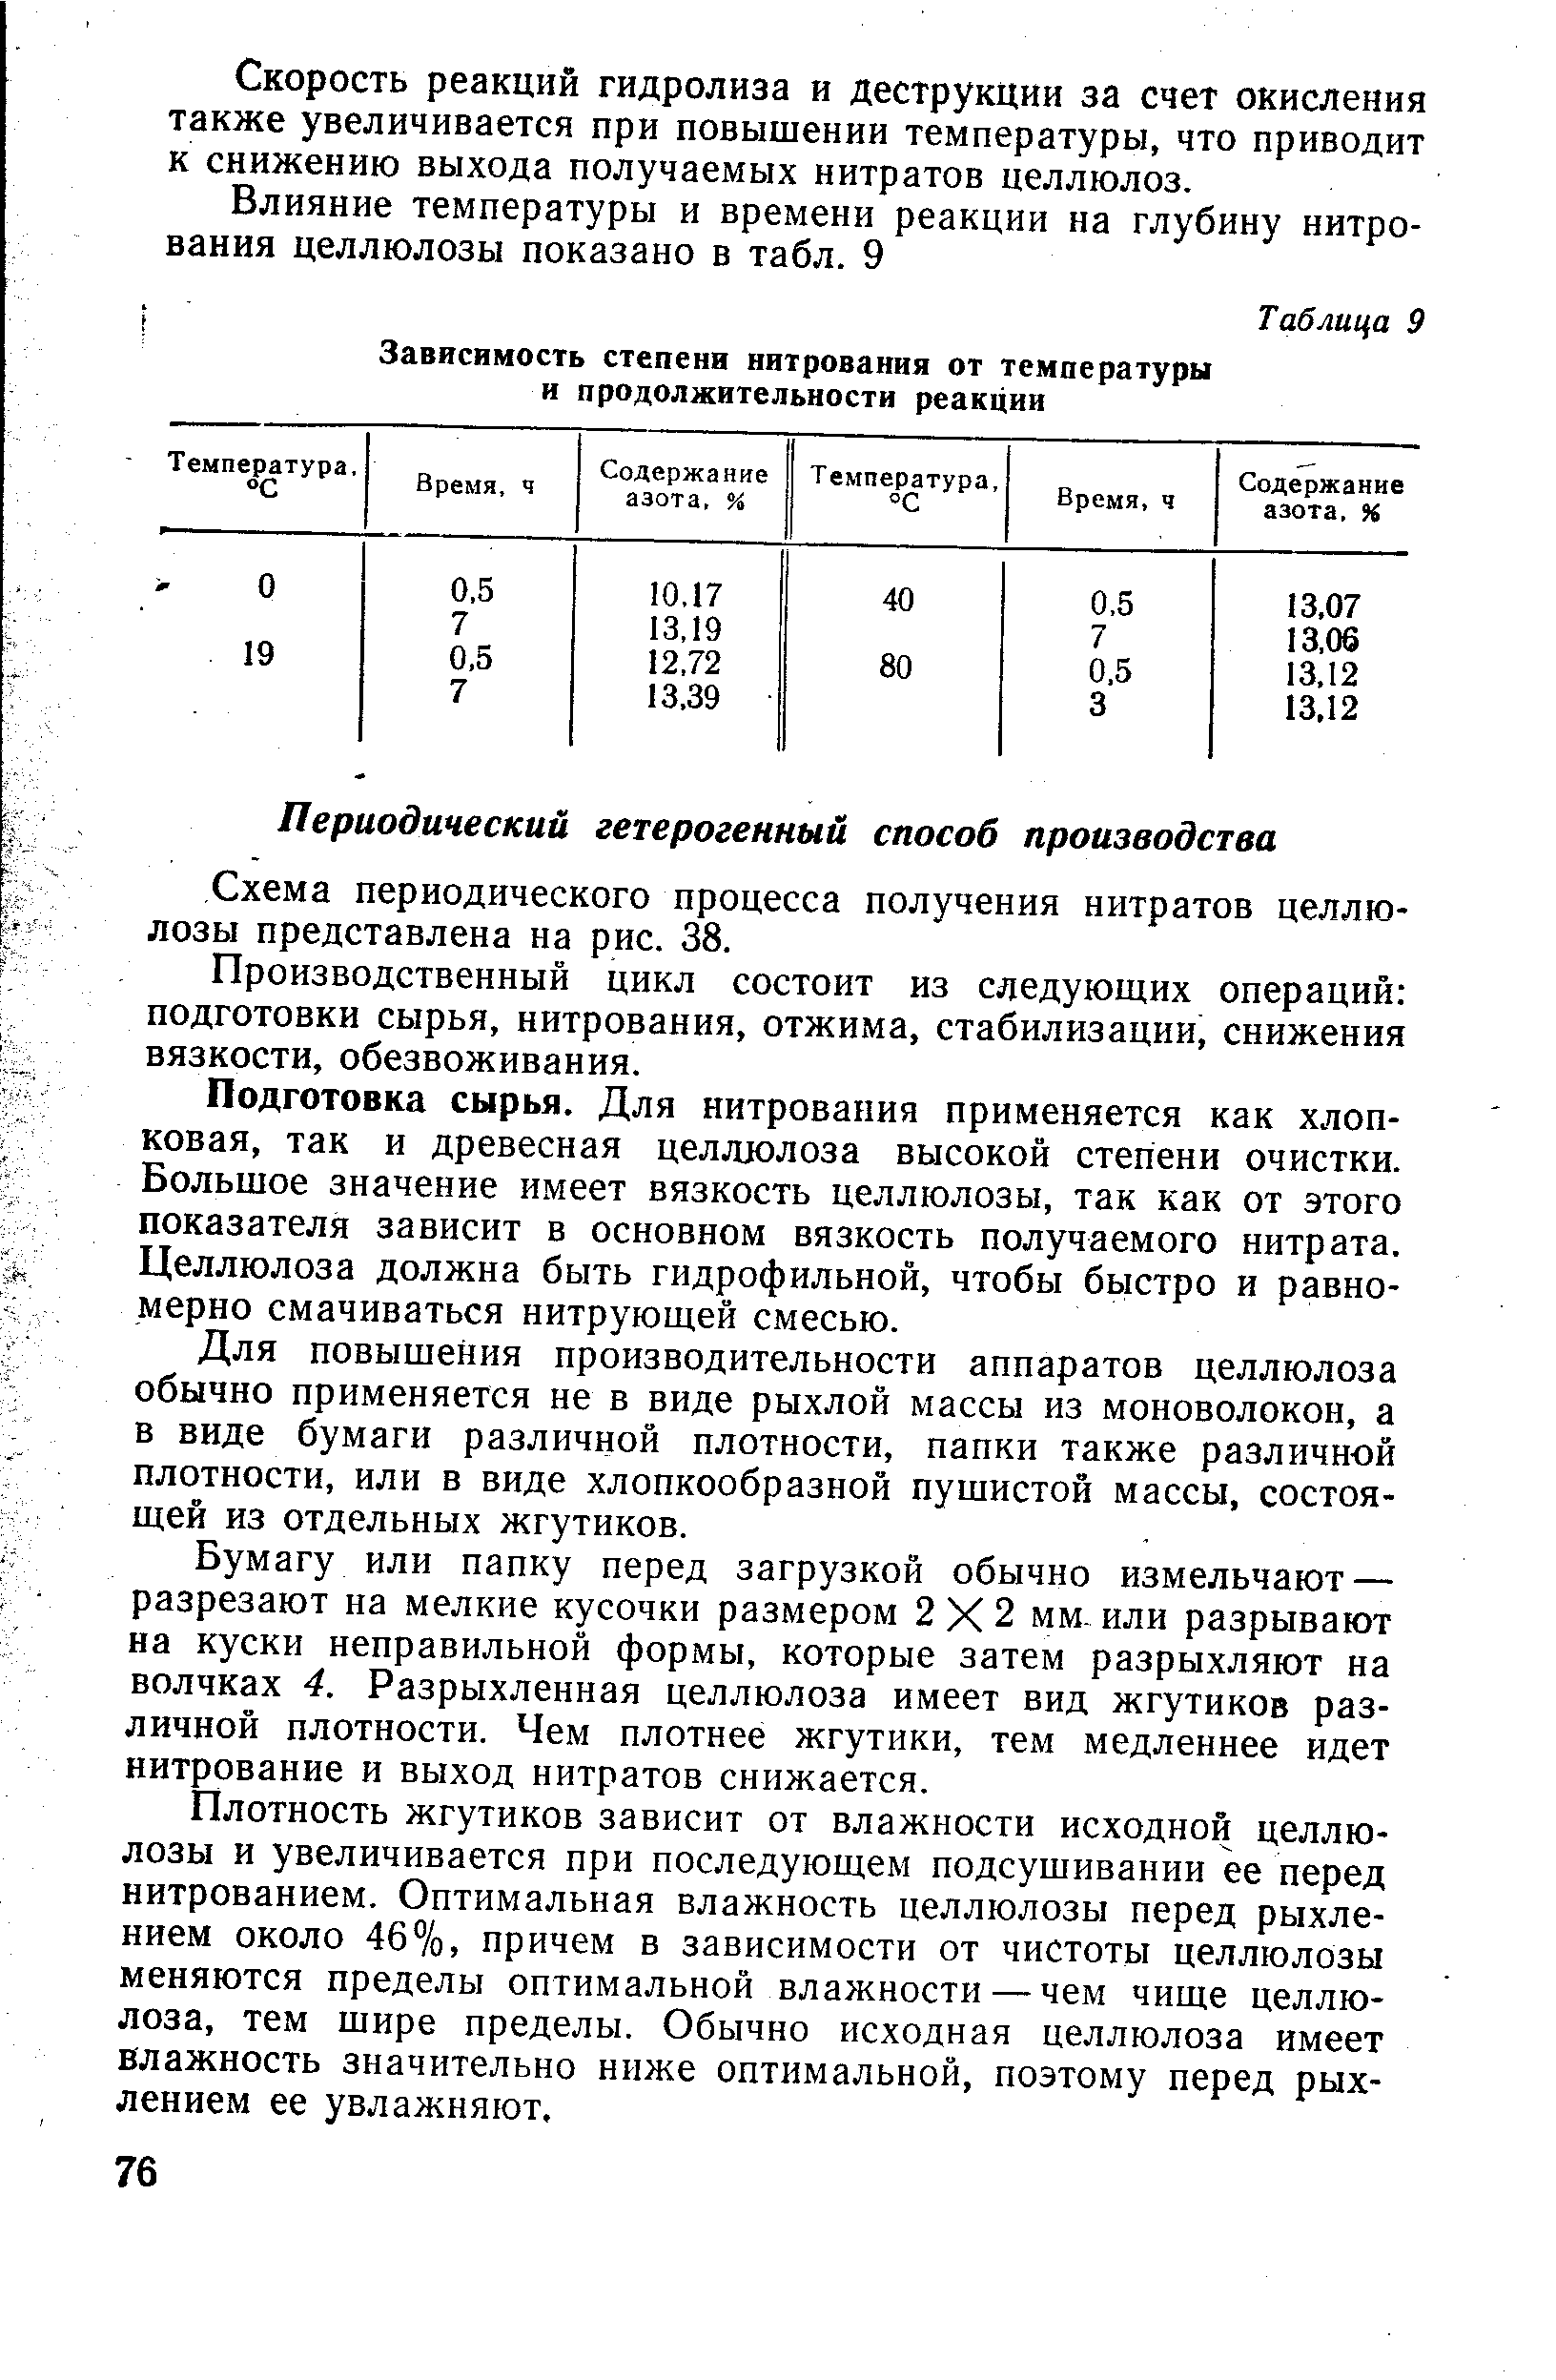 Схема периодического процесса получения нитратов целлюлозы представлена на рис. 38.